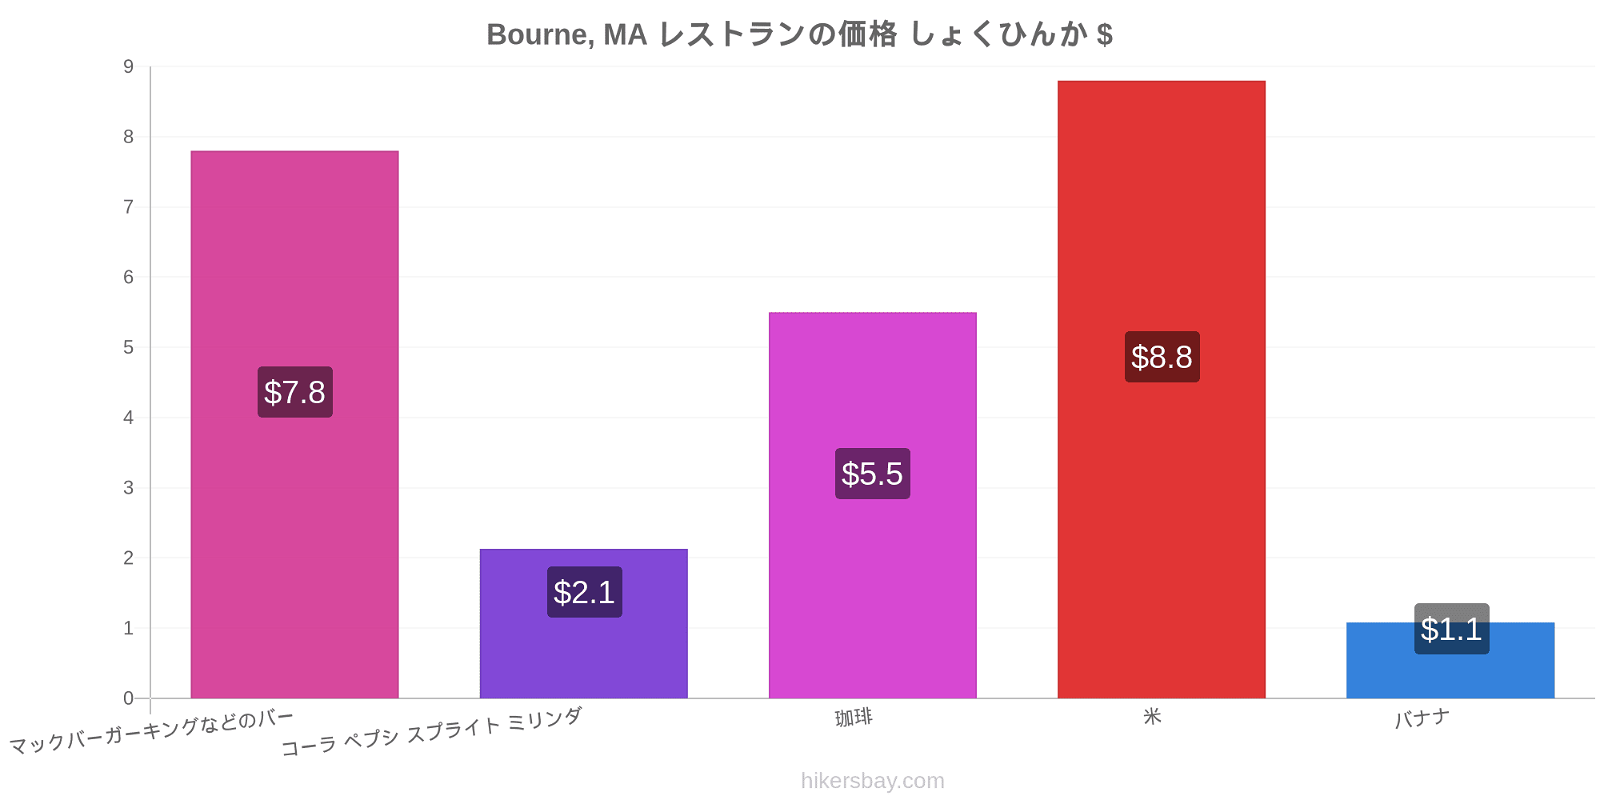 Bourne, MA 価格の変更 hikersbay.com